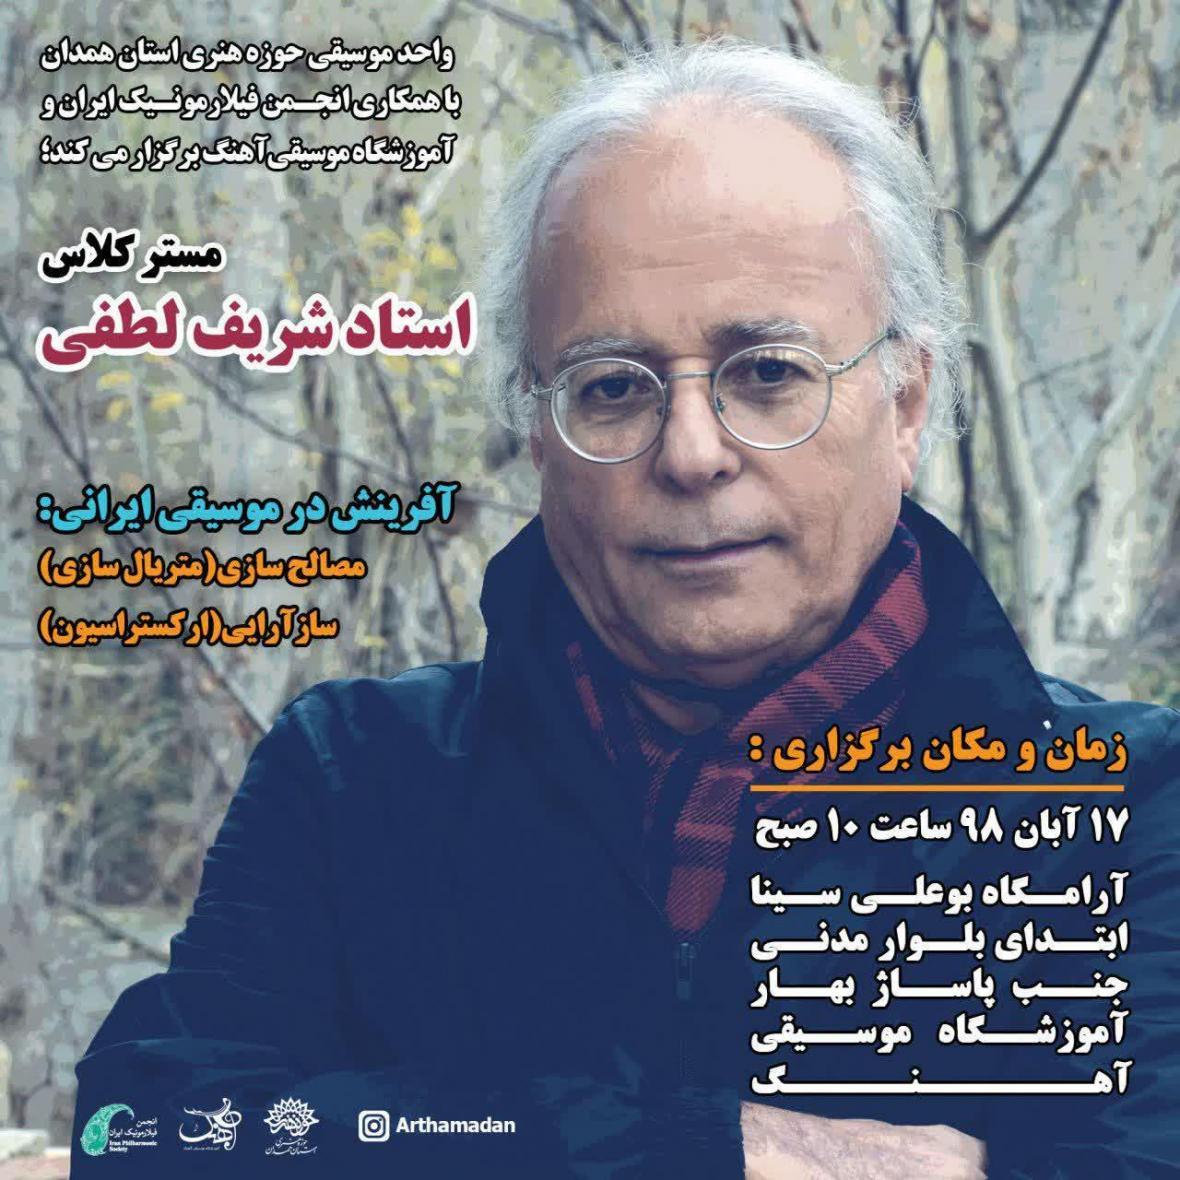 مستر کلاس آفرینش در موسیقی ایرانی با حضور شریف لطفی در همدان